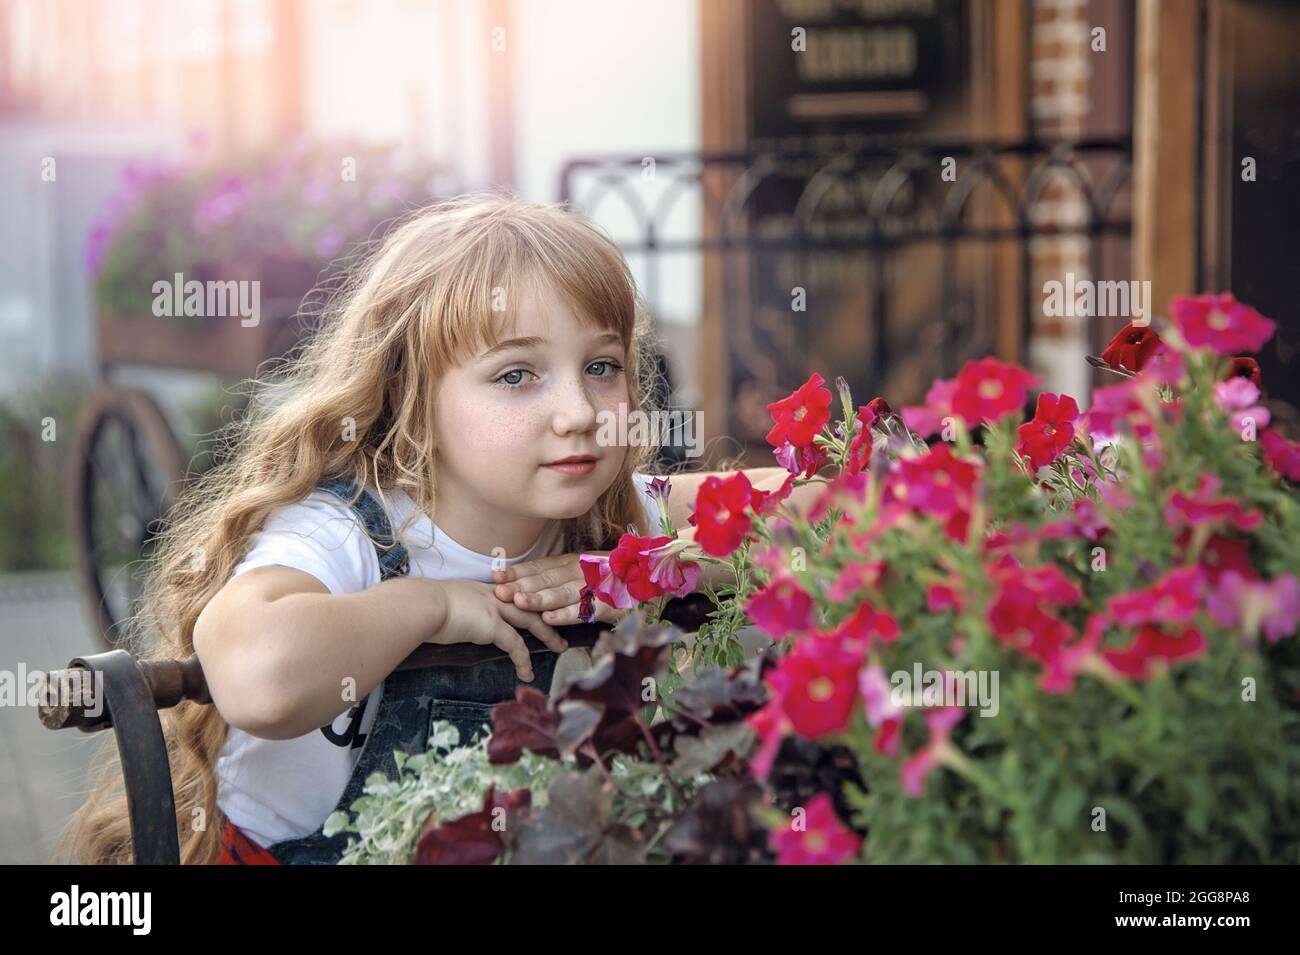 Portrait d'une jeune fille de 11 ans dans la rue avec des fleurs pétunia. Elle sourit et pose au coucher du soleil. Banque D'Images